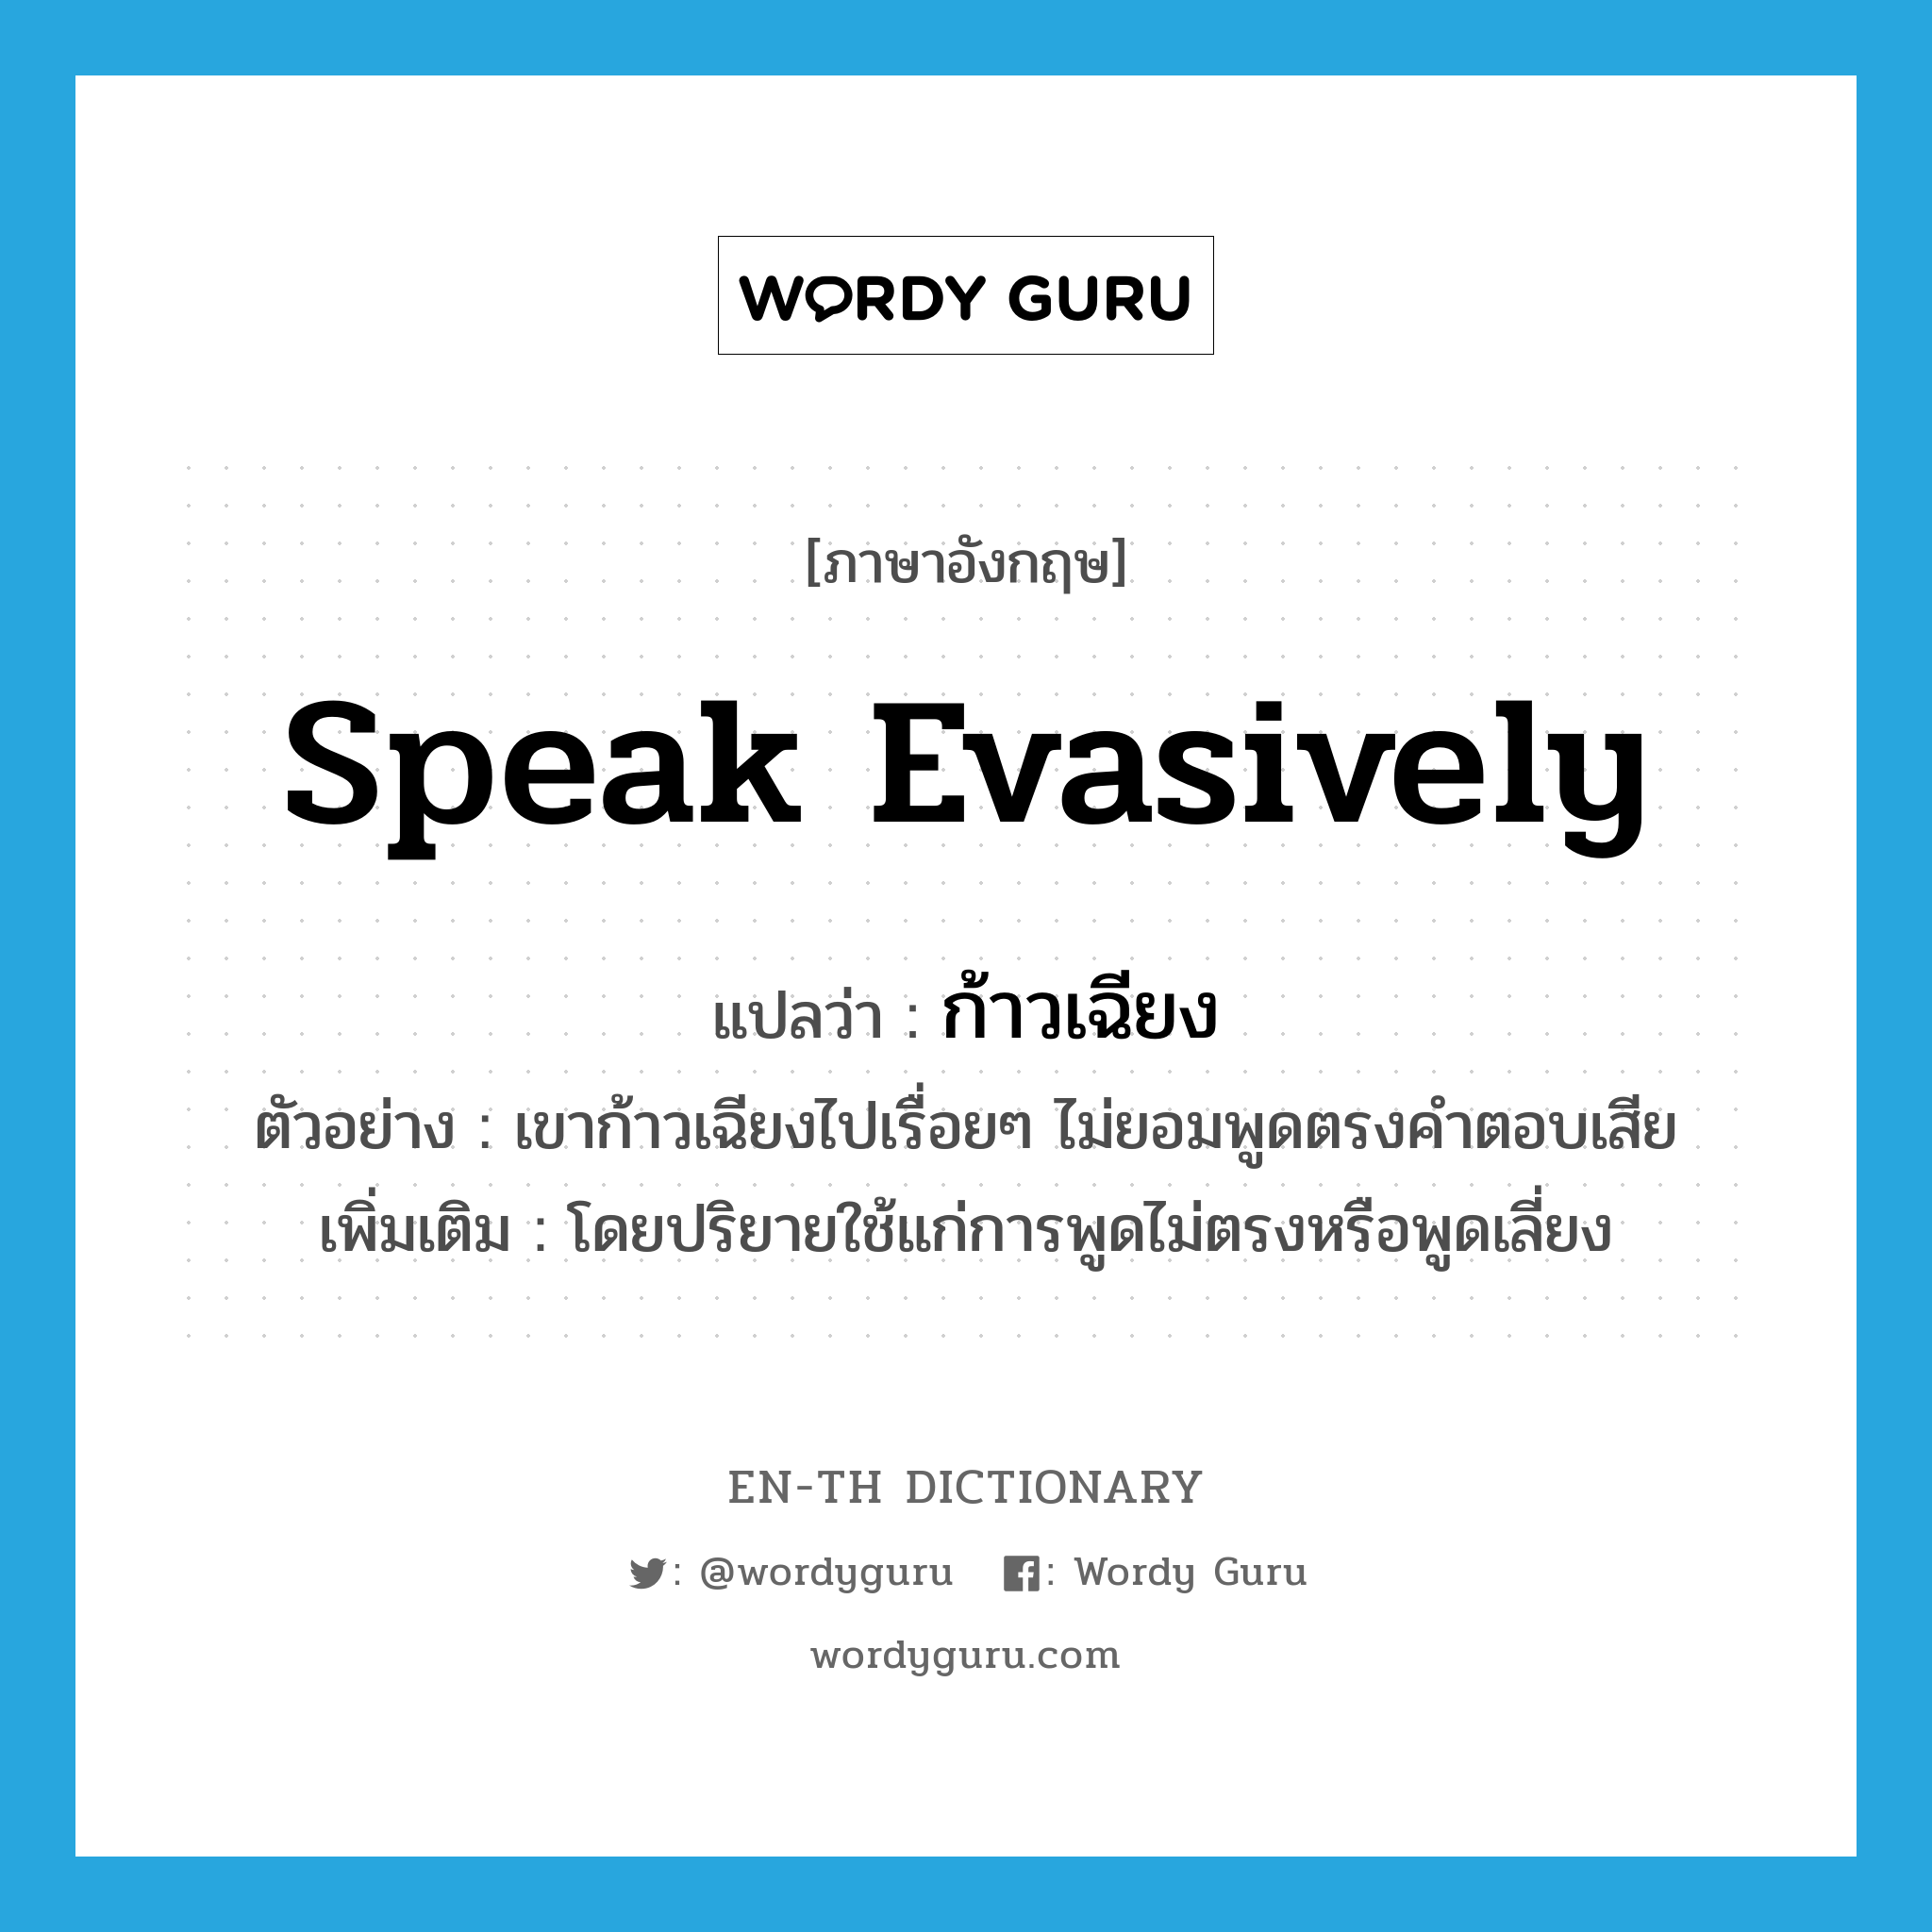 speak evasively แปลว่า?, คำศัพท์ภาษาอังกฤษ speak evasively แปลว่า ก้าวเฉียง ประเภท V ตัวอย่าง เขาก้าวเฉียงไปเรื่อยๆ ไม่ยอมพูดตรงคำตอบเสีย เพิ่มเติม โดยปริยายใช้แก่การพูดไม่ตรงหรือพูดเลี่ยง หมวด V